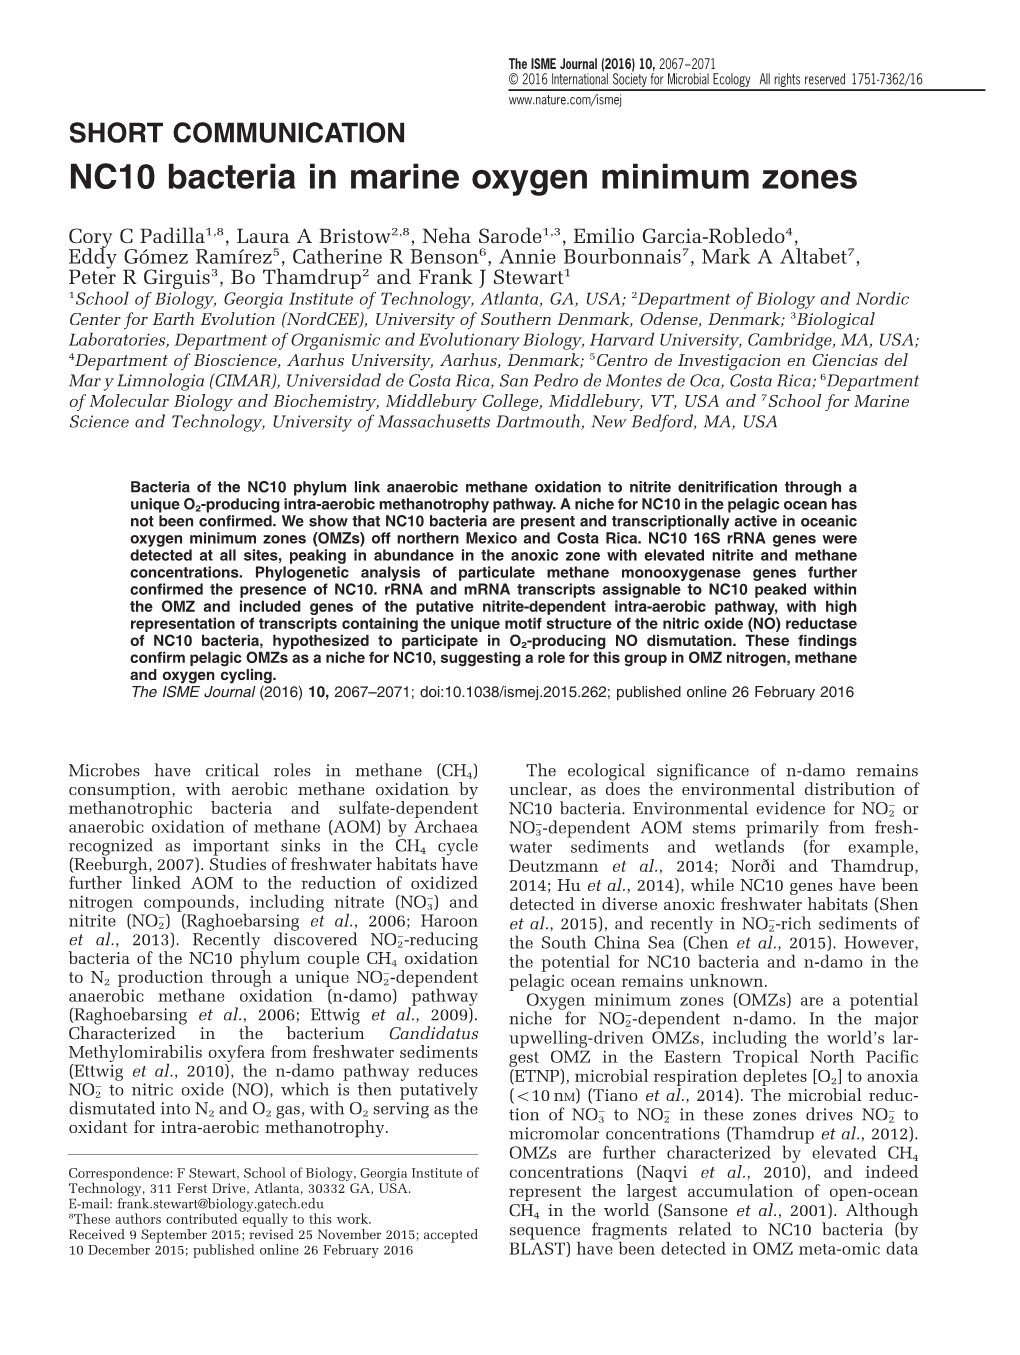 NC10 Bacteria in Marine Oxygen Minimum Zones